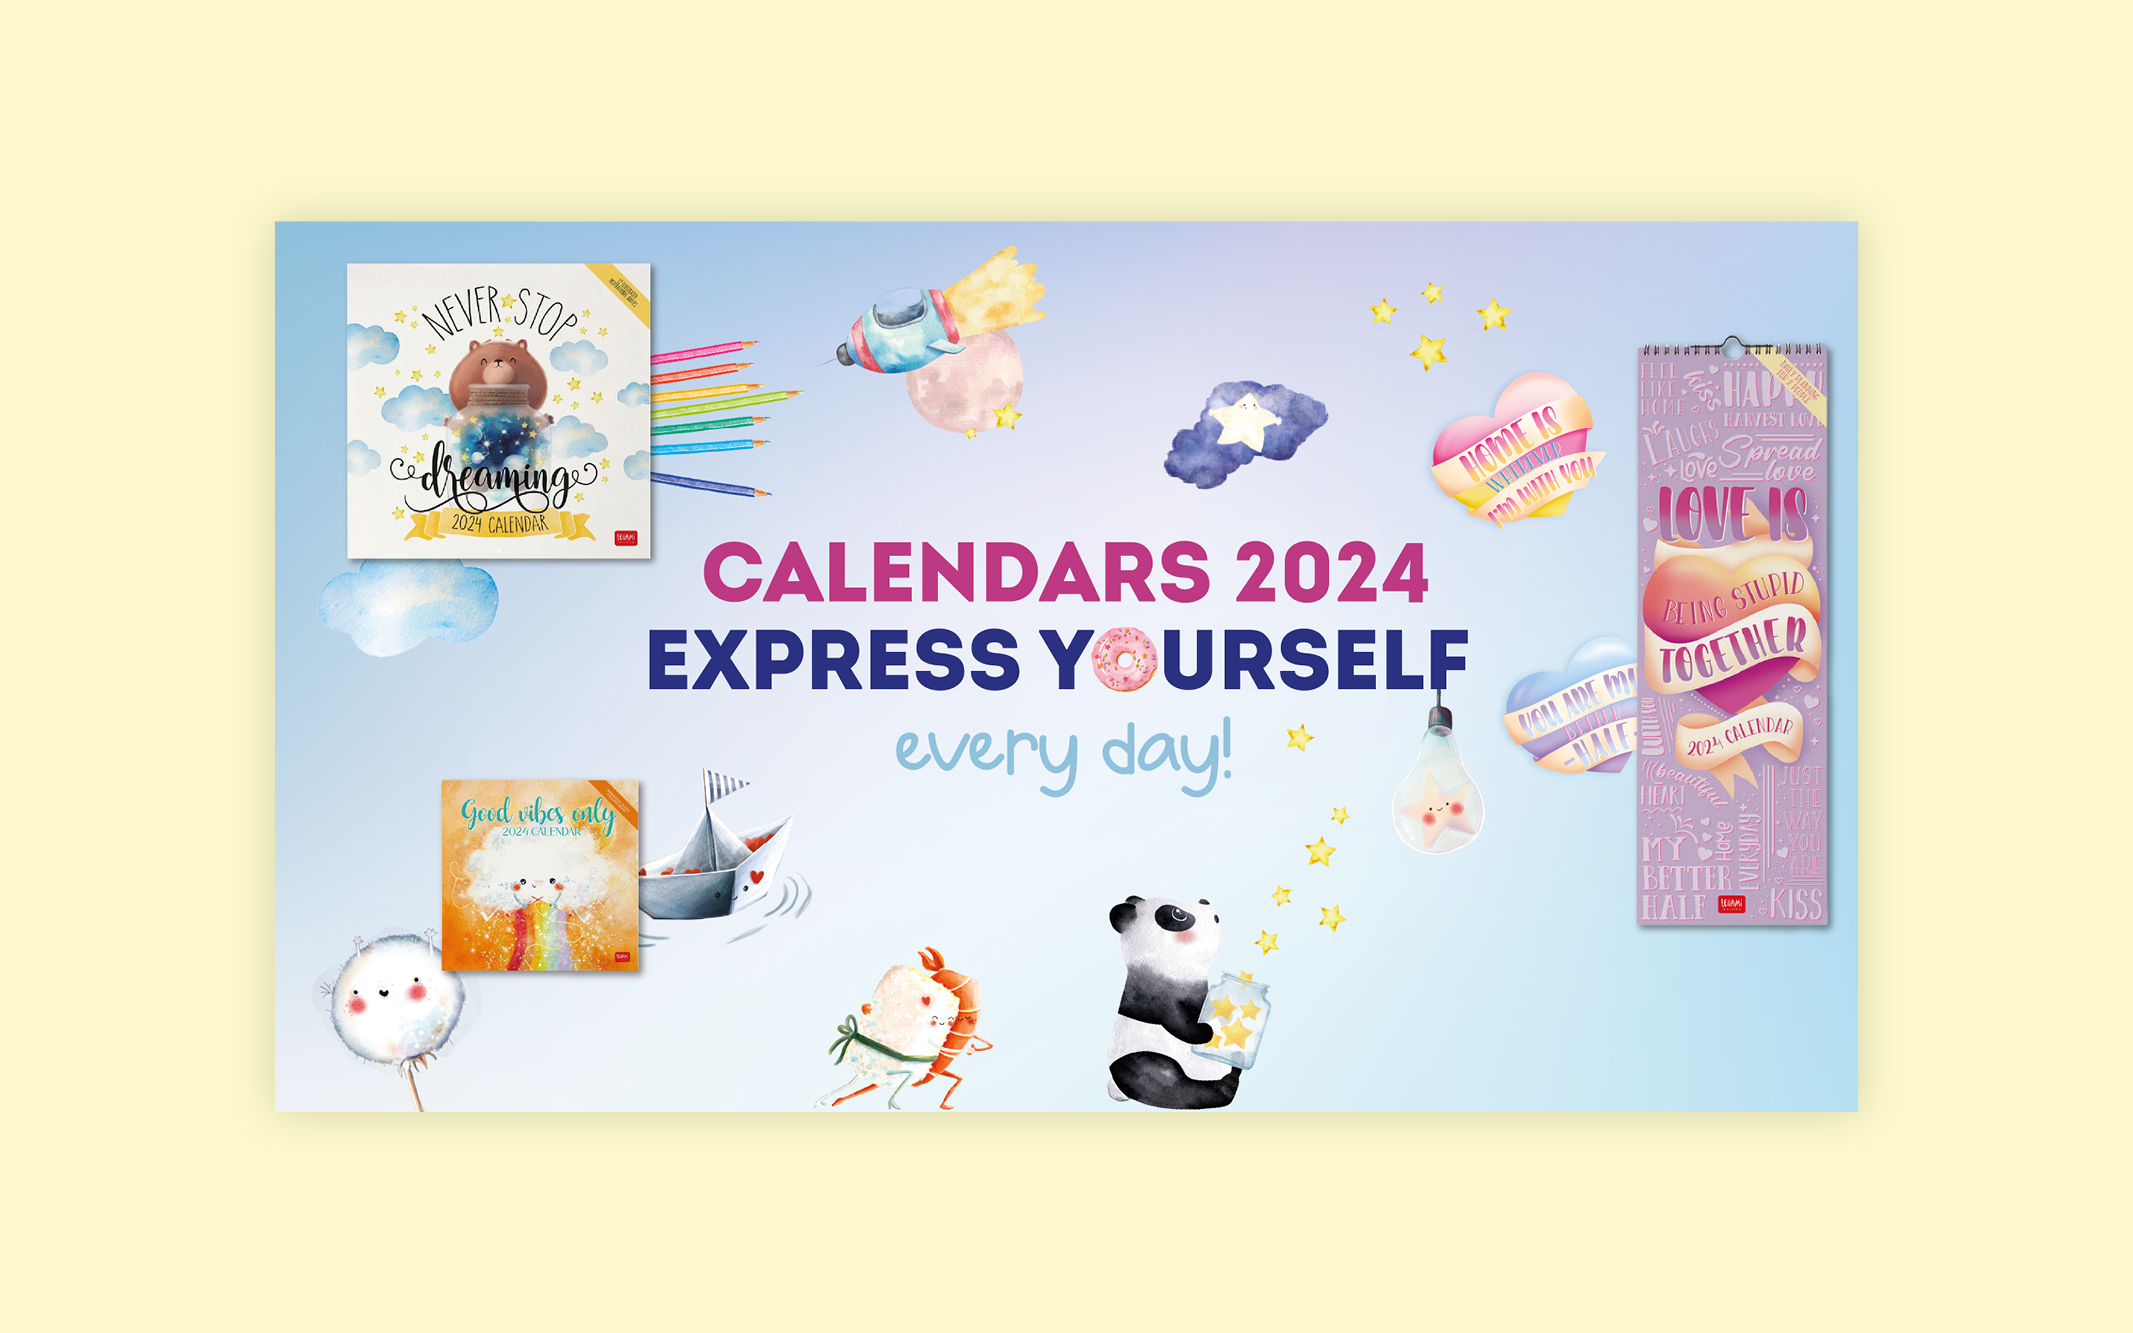 Video e visual per la nuova collezione di calendari Legami 2024 — Publifarm